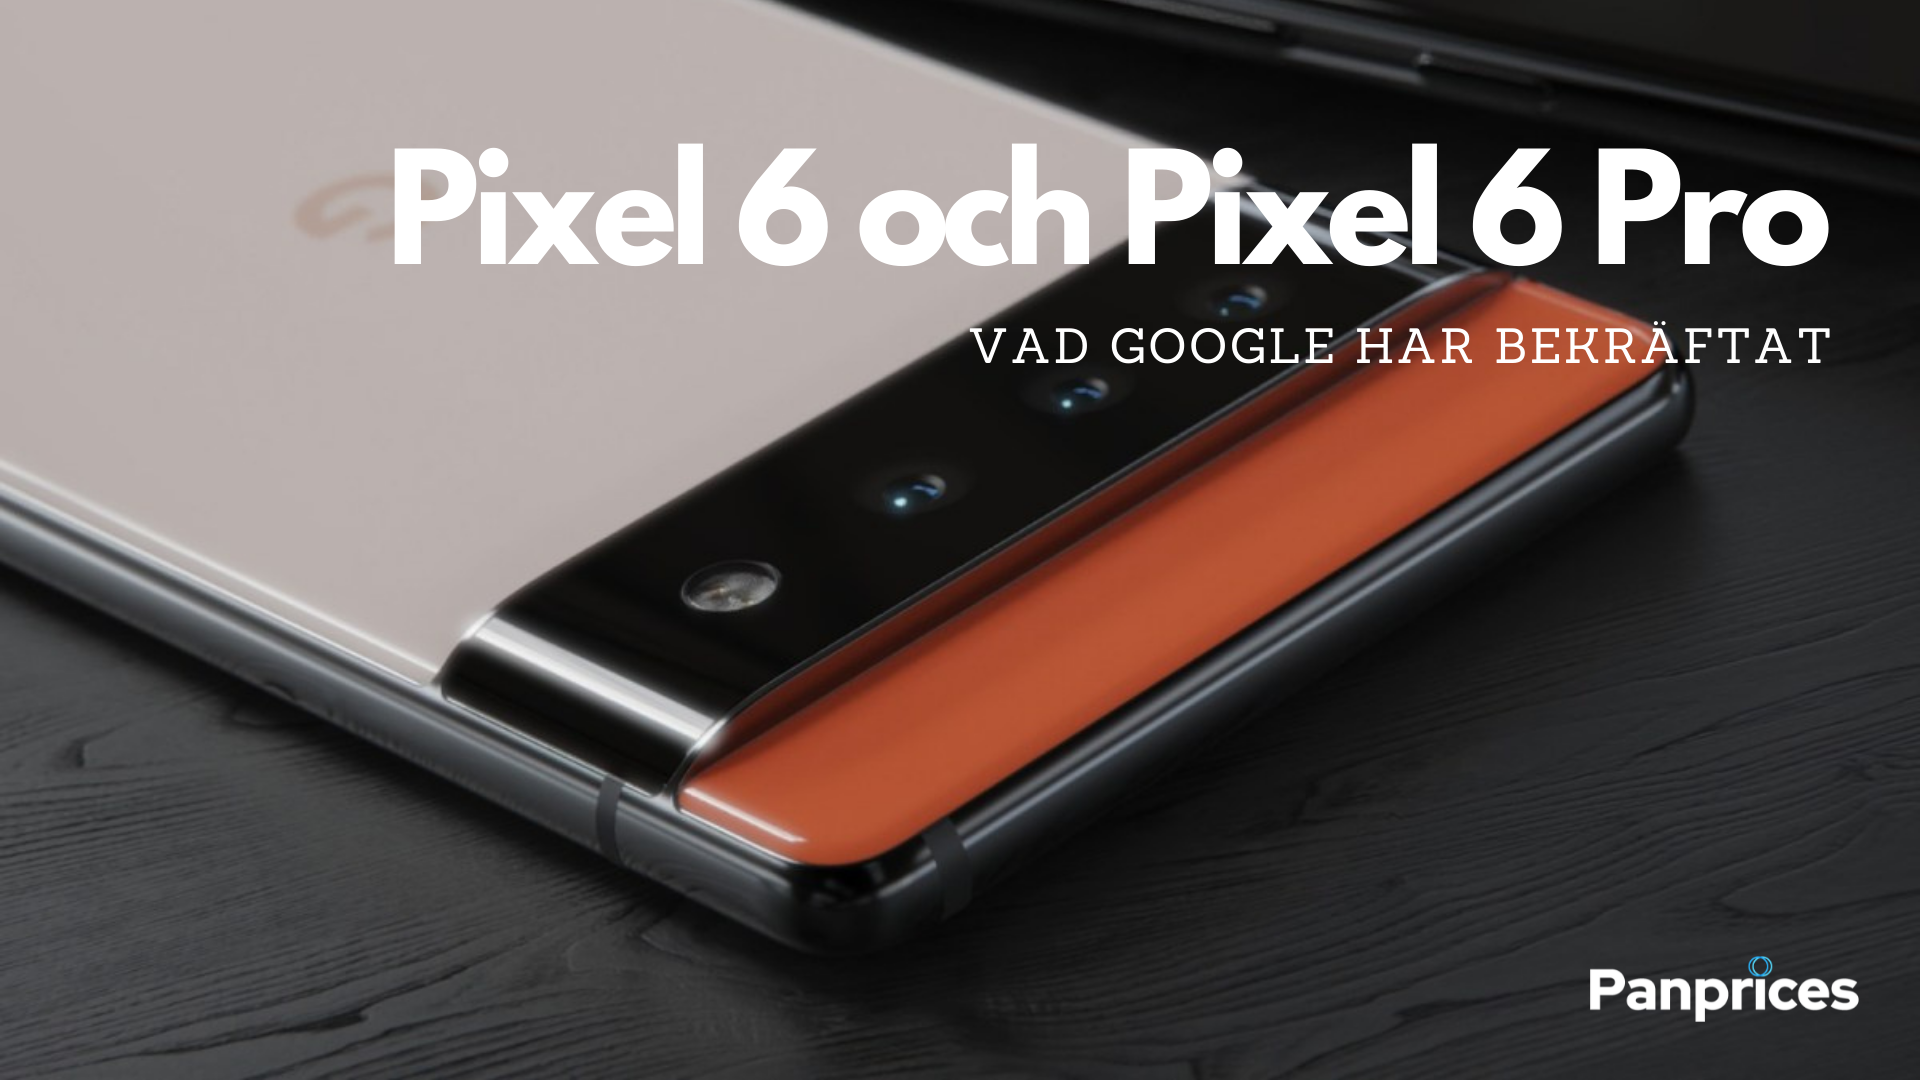 Google Pixel 6 & Pixel 6 Pro: What Google has confirmed